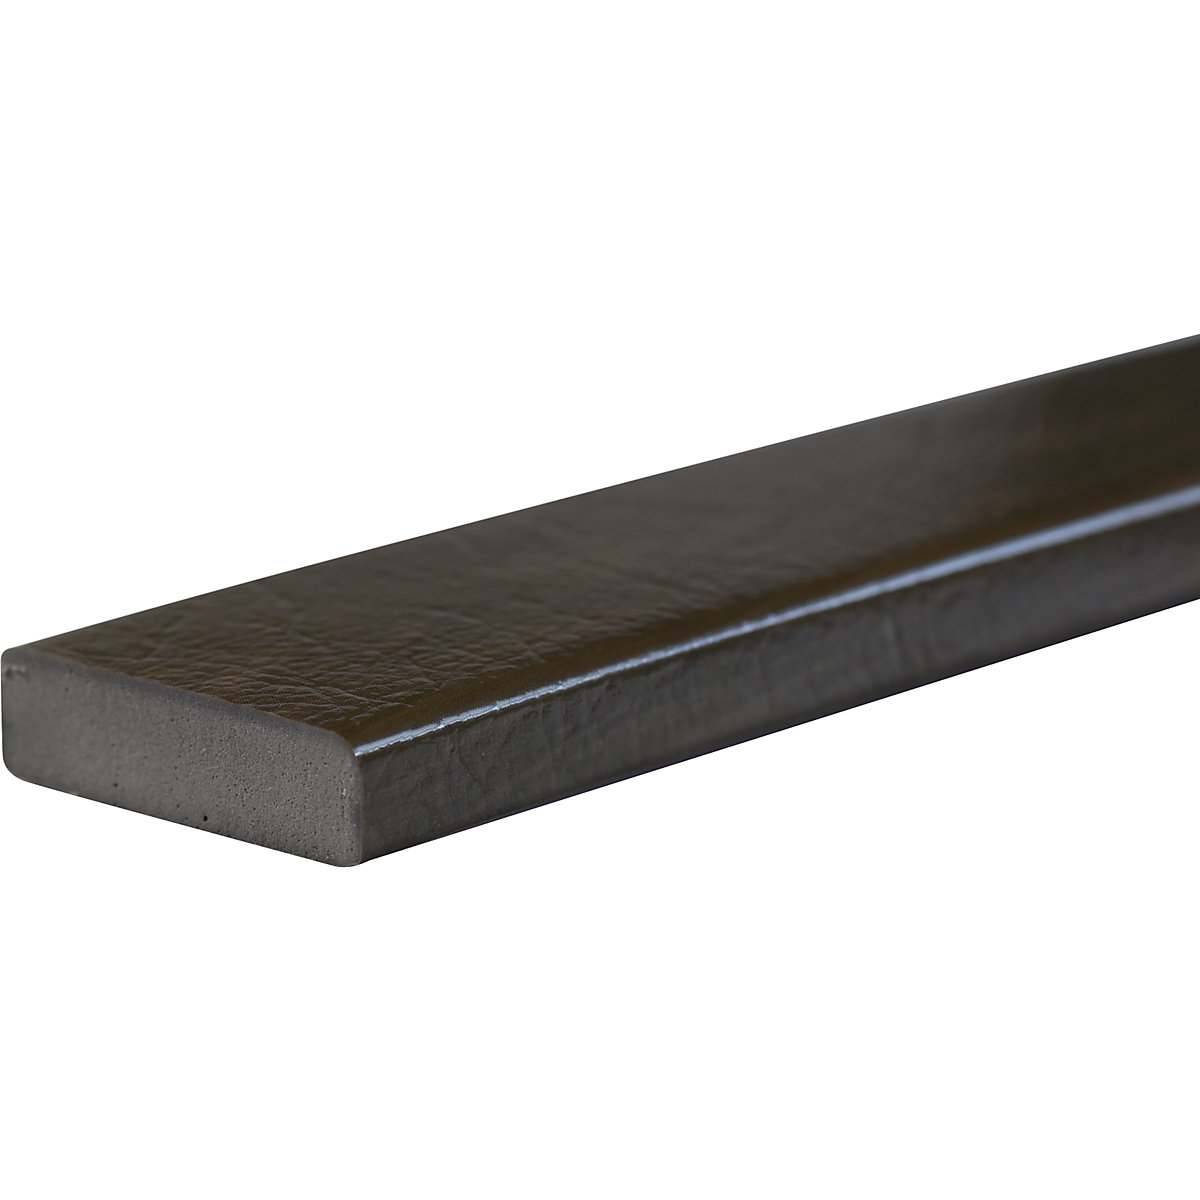 SHG – Proteção de superfícies Knuffi®, tipo S, unidade de 1 m, imitação de madeira caqui